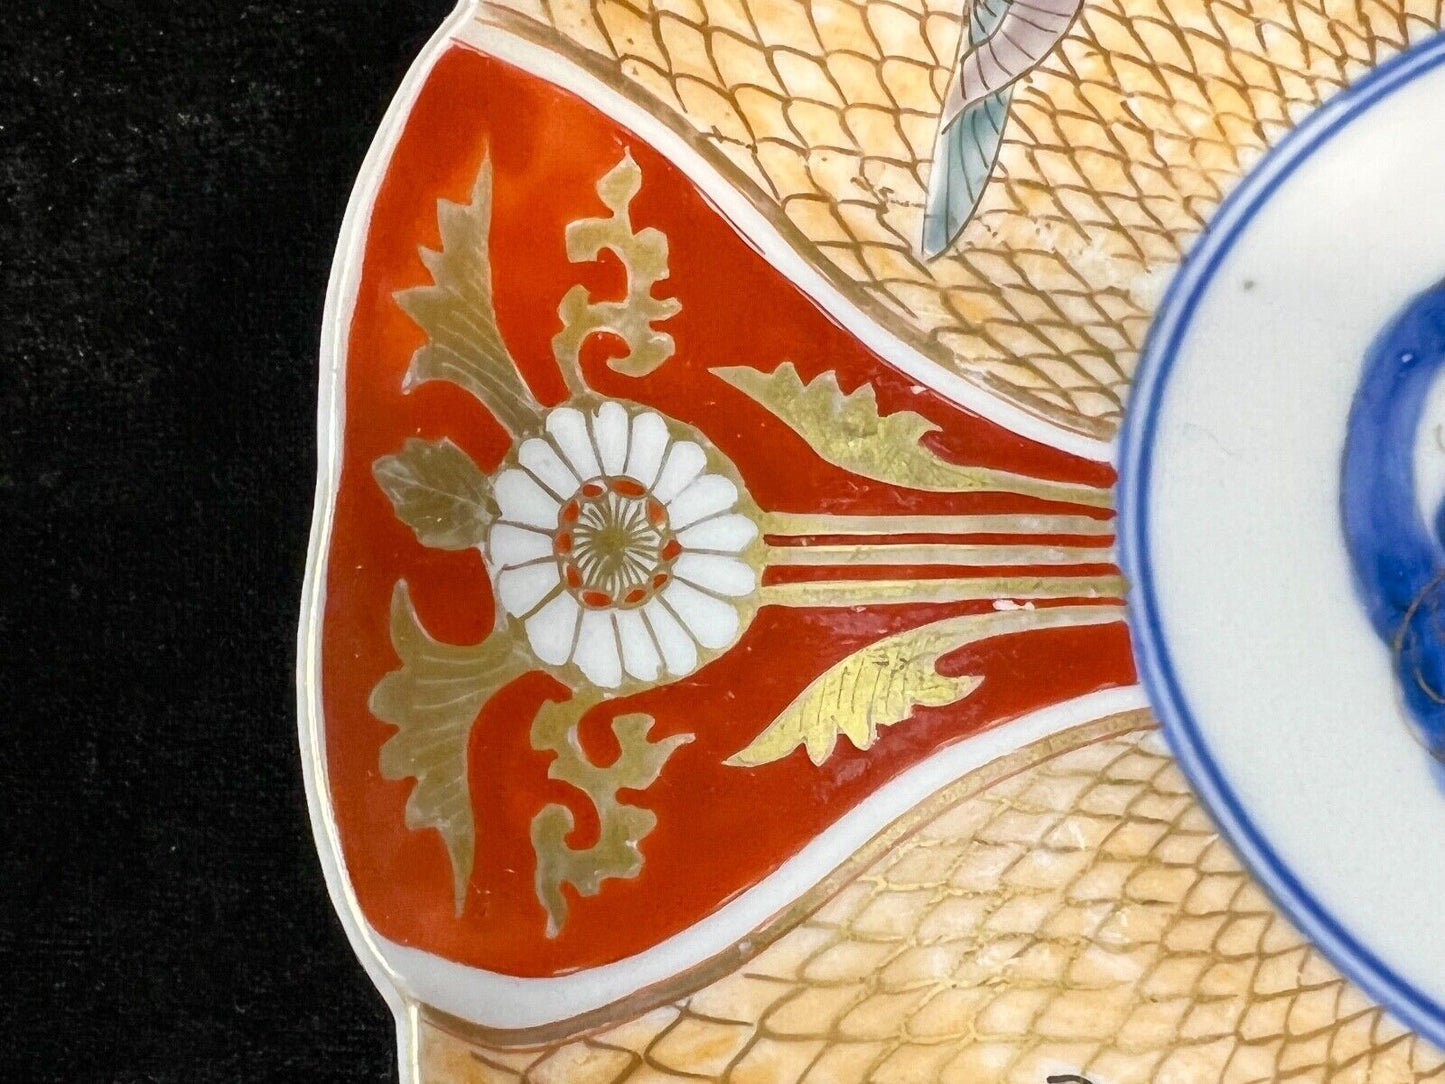 Antique Japanese 19Th Century Imari Ceramic Plate Snow Geese 8.75"